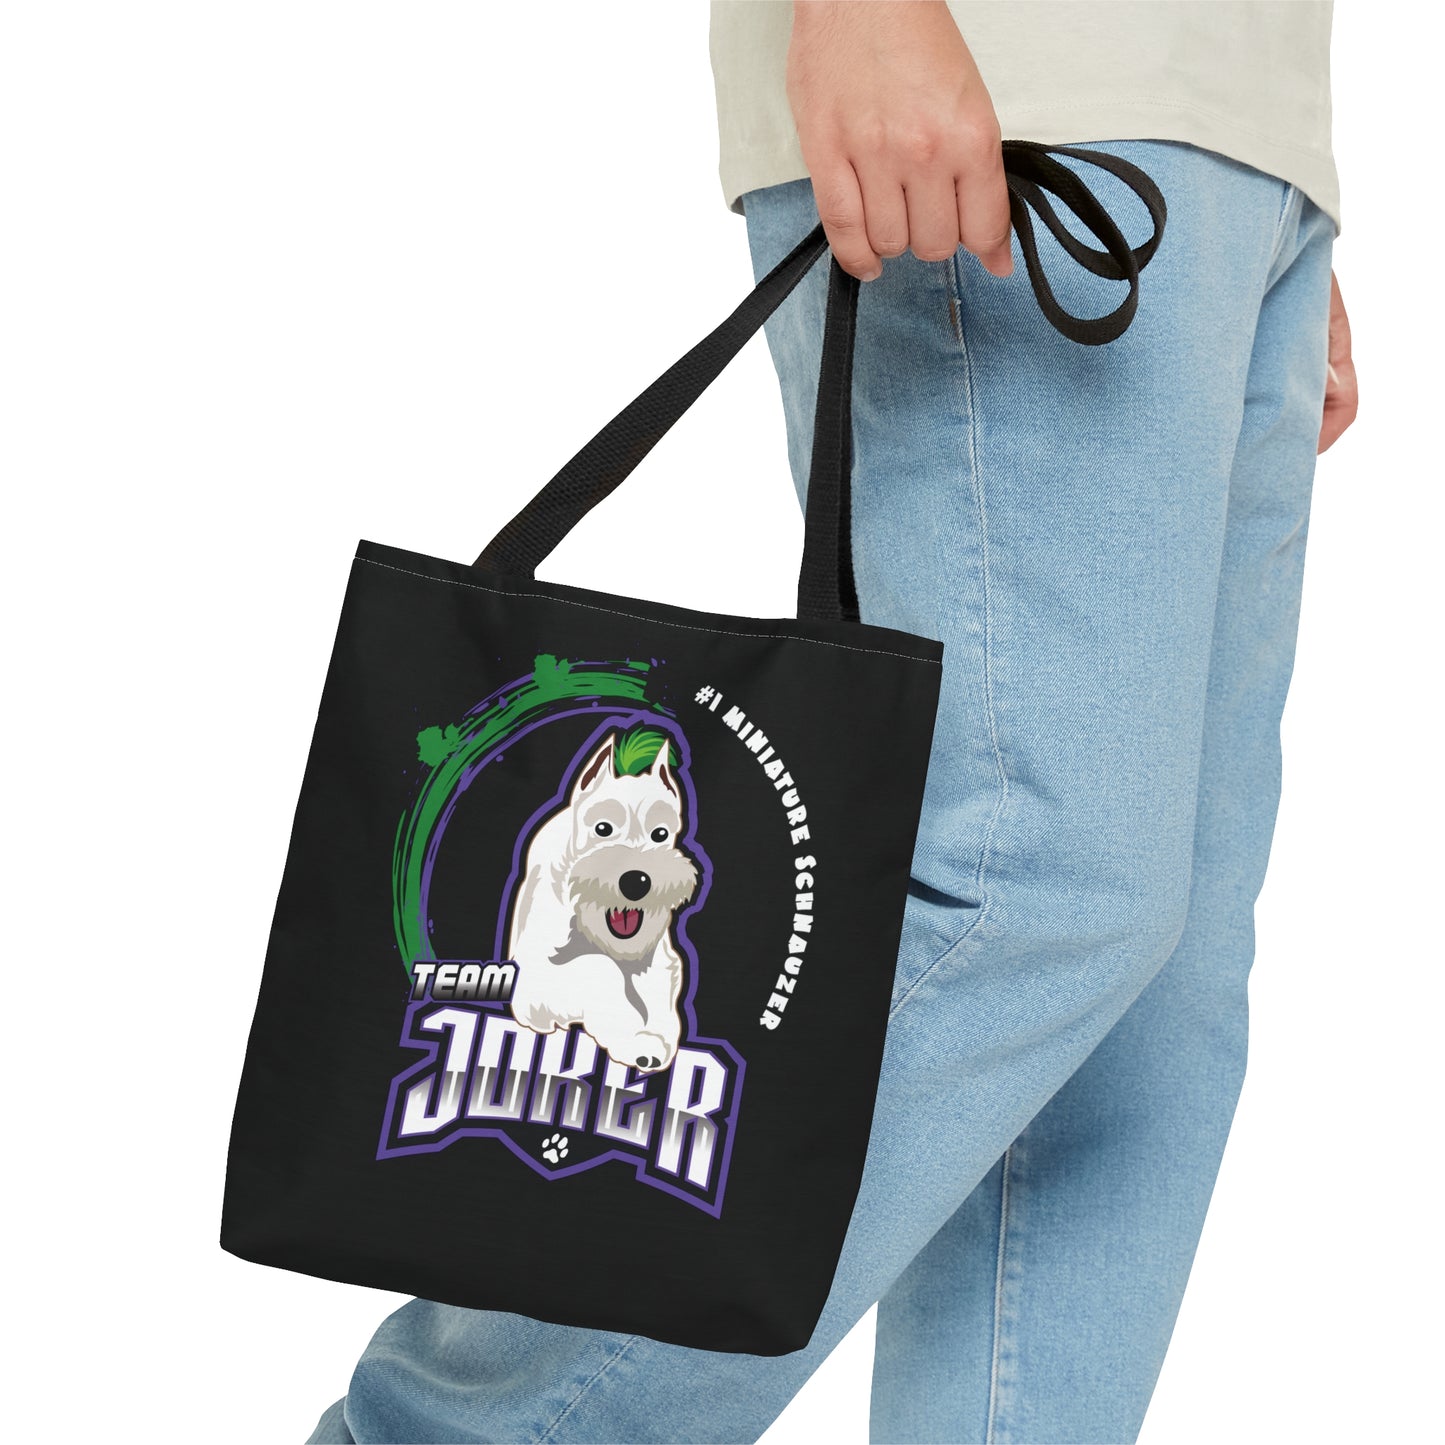 JOKER Tote Bag